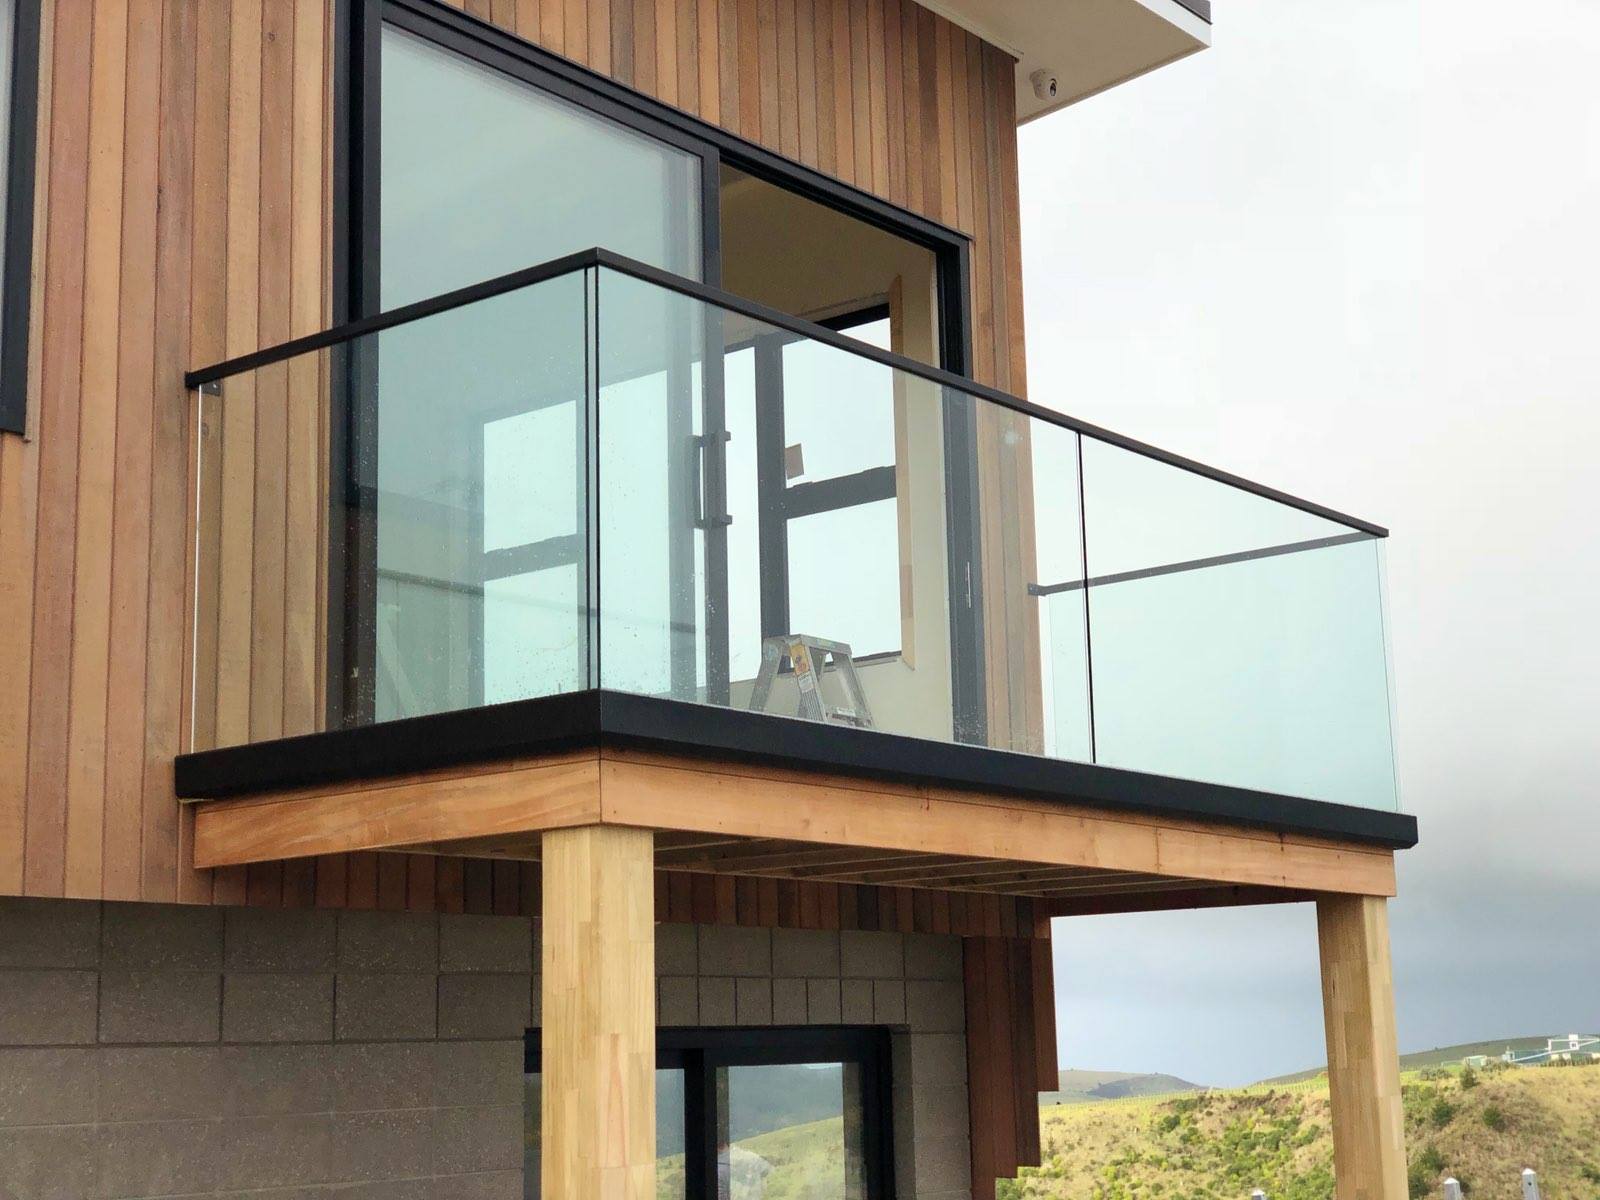 Aluminiumterrasse-Geländer / Glasbalustrade / U-Kanal-Glasgeländer für Balkon